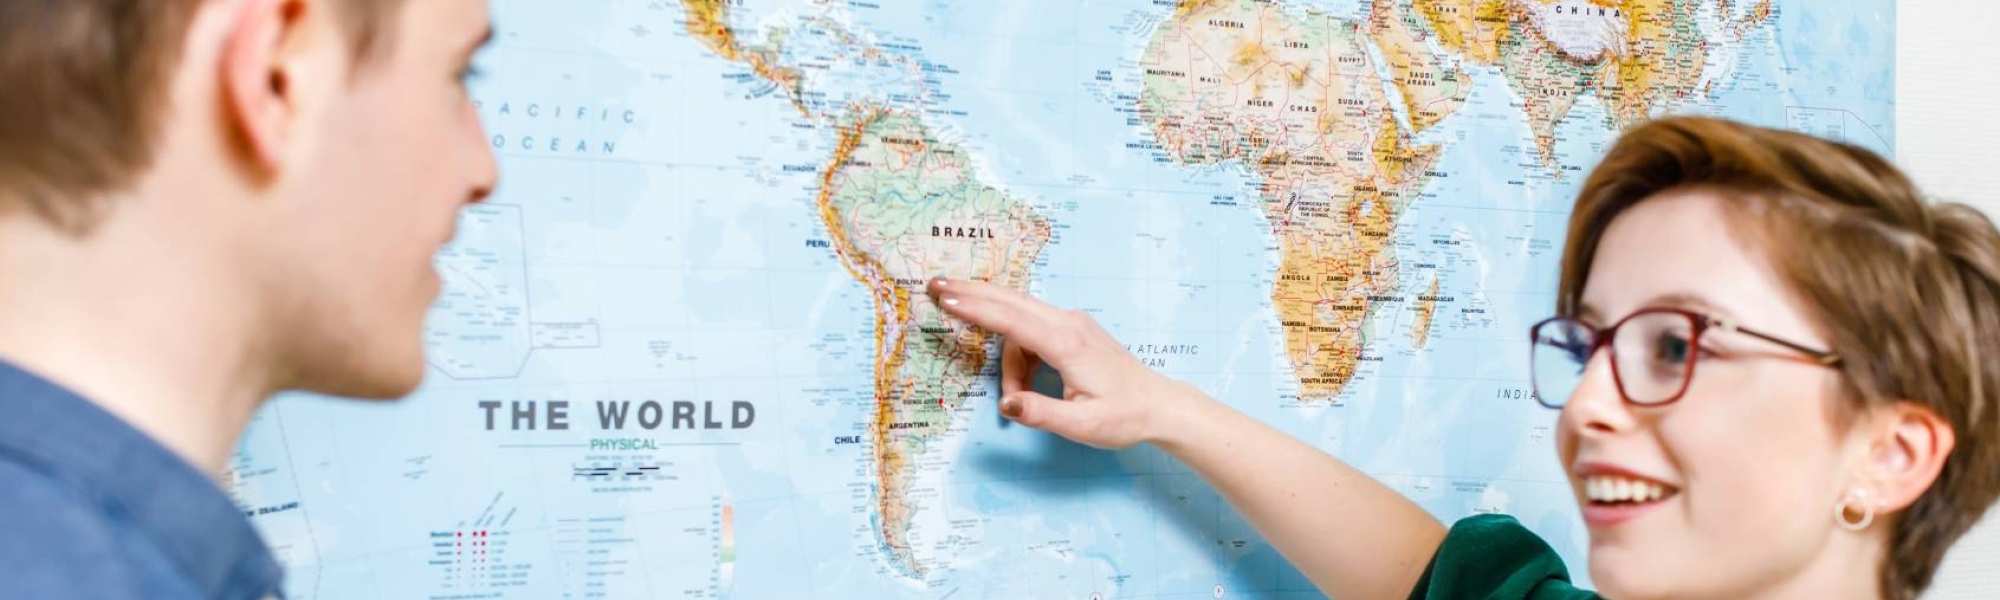 student wijst op wereldkaart